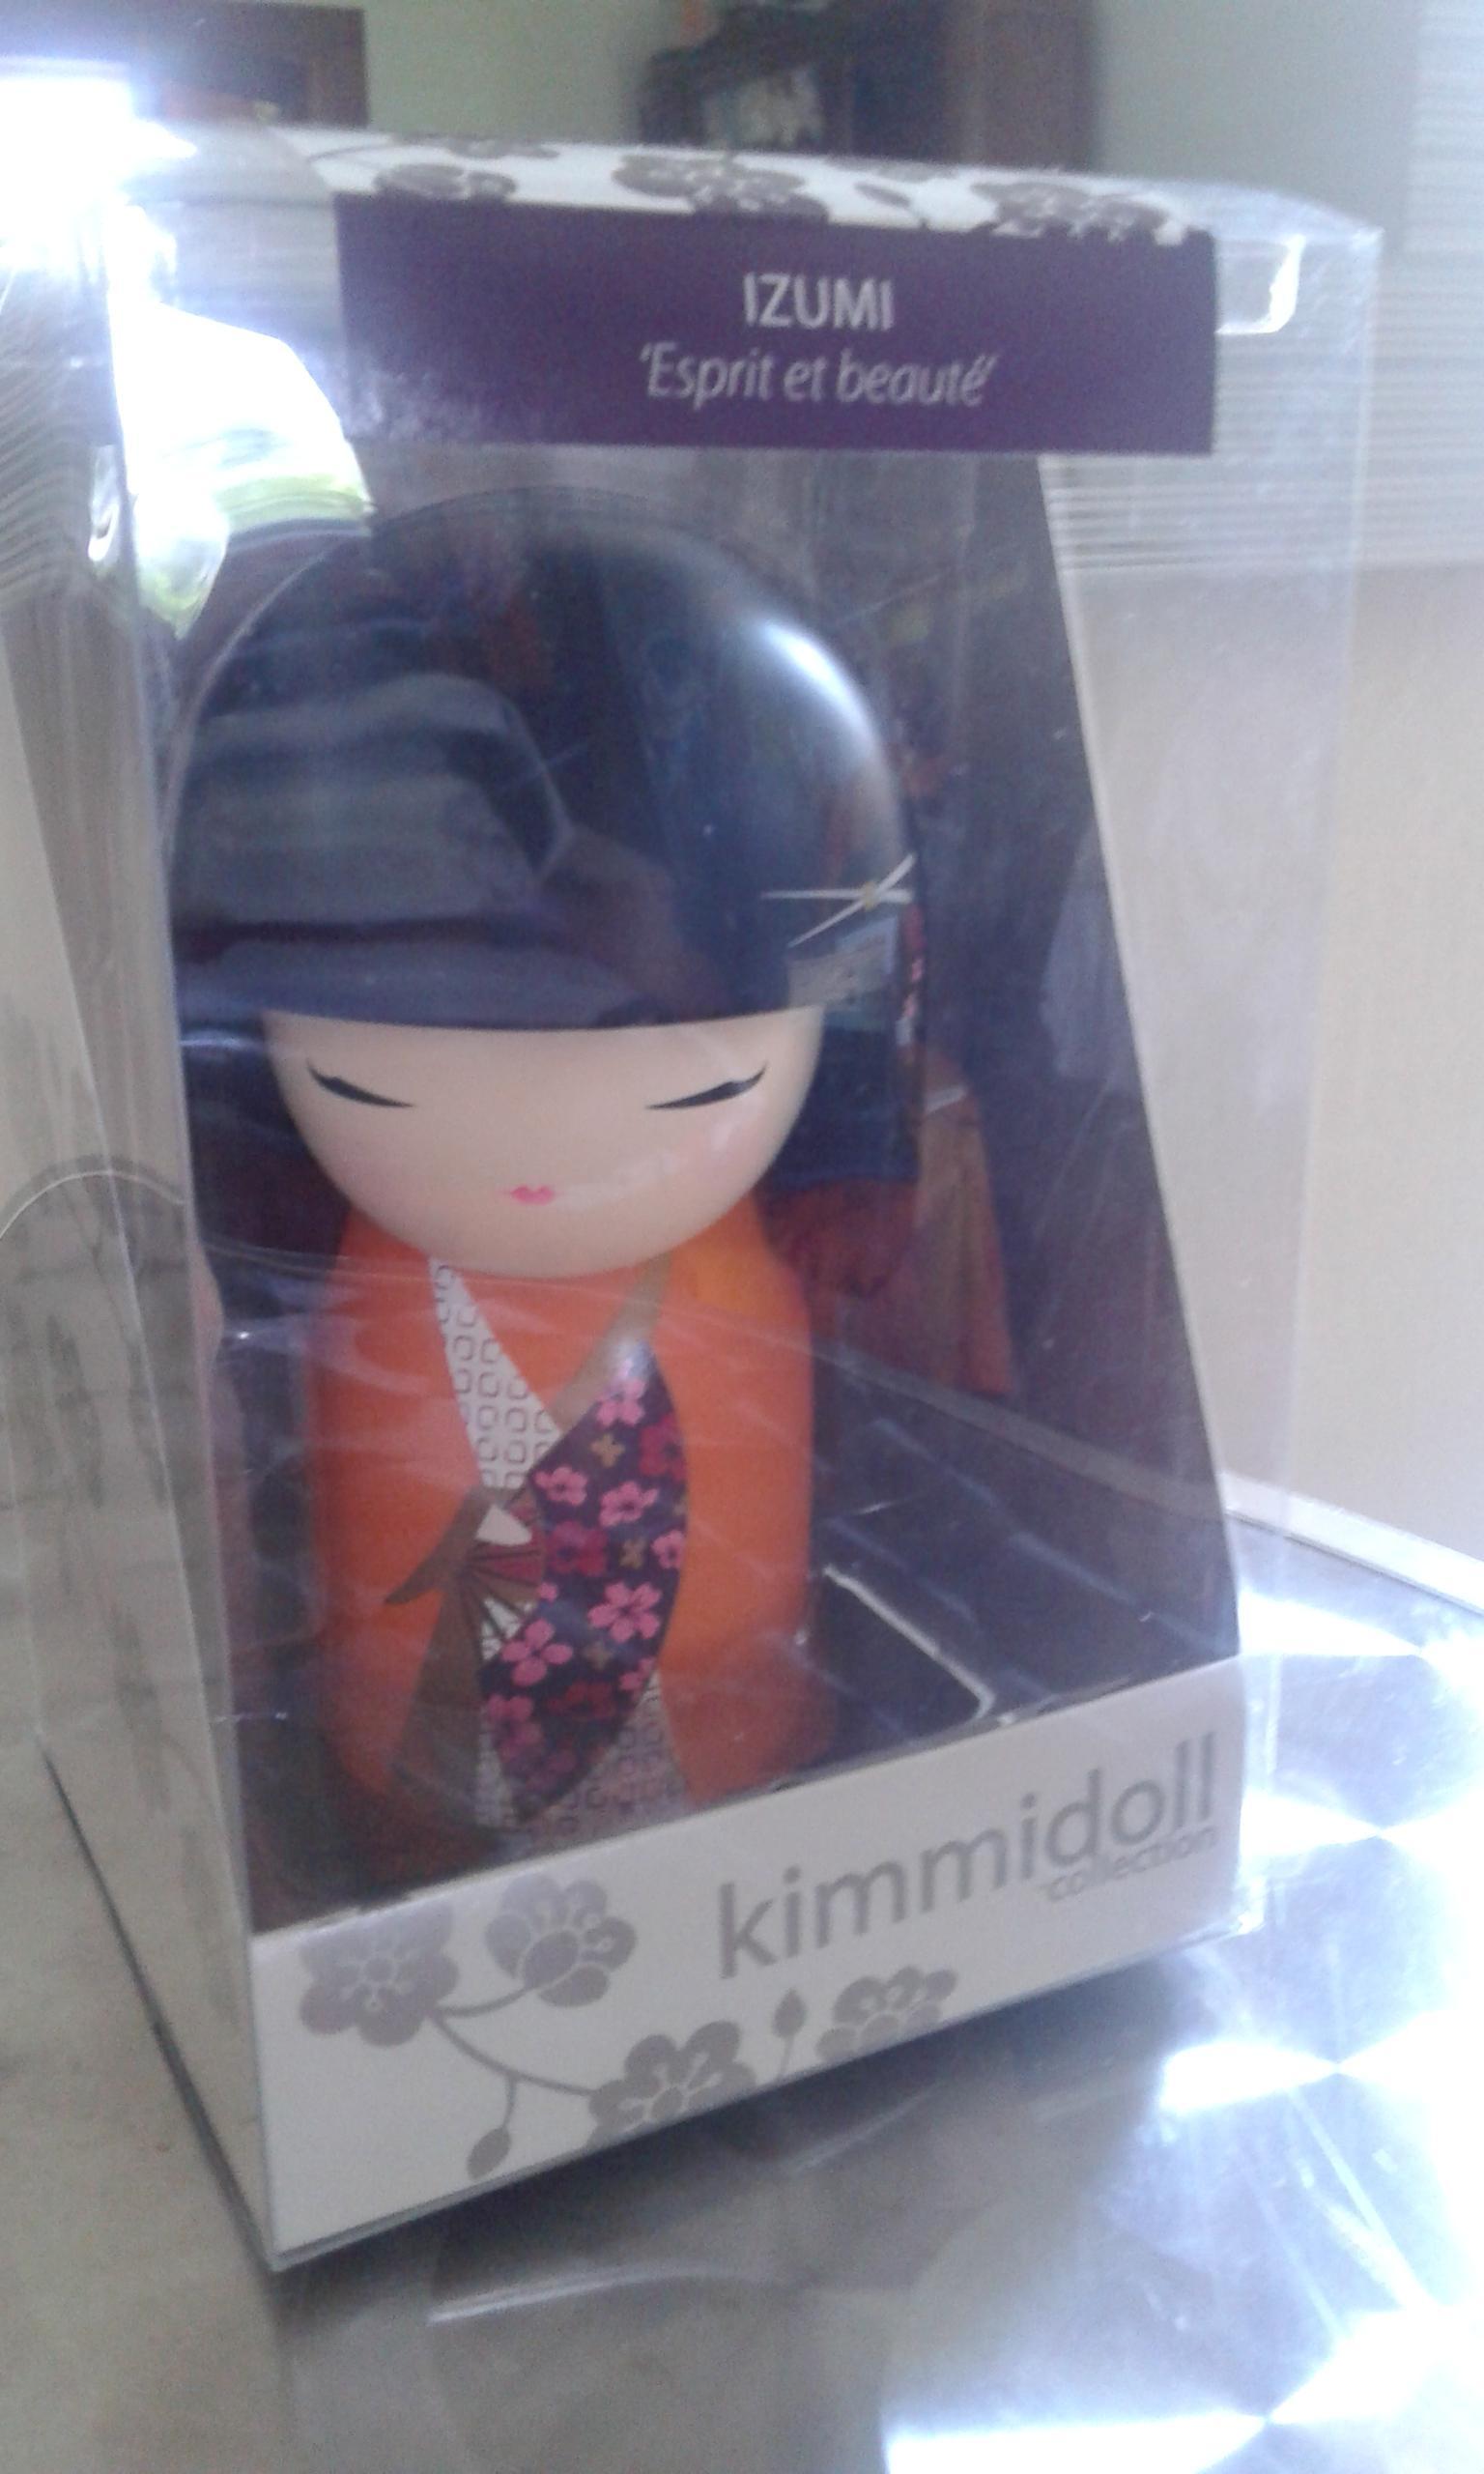 troc de troc poupée de décoration: kimmidoll 10 cm. izumi image 1